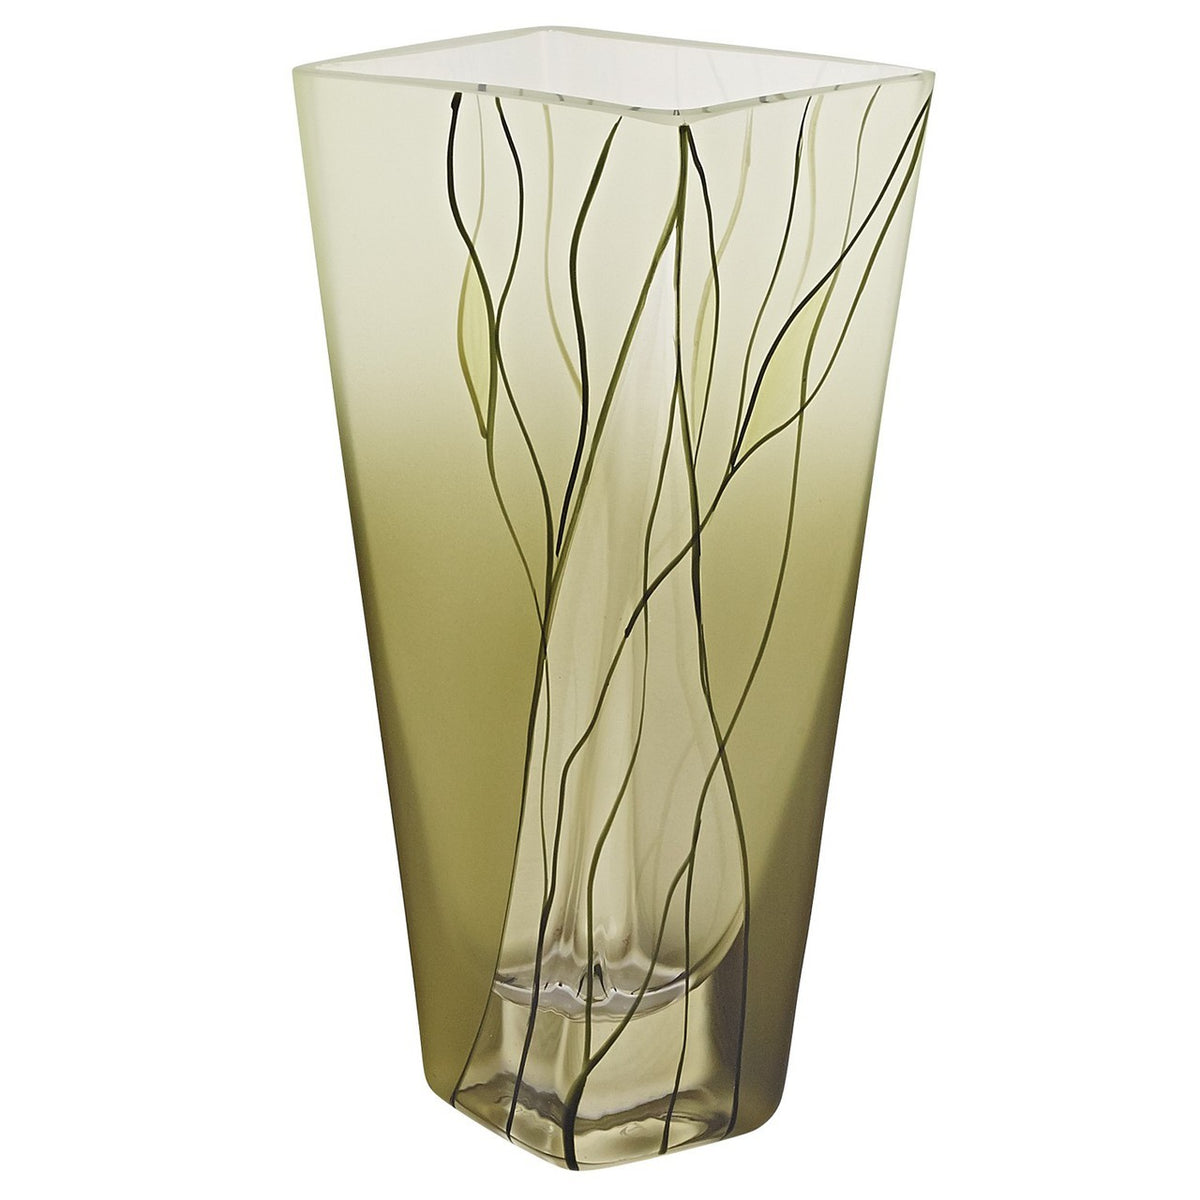 Evergreen Squarish vase